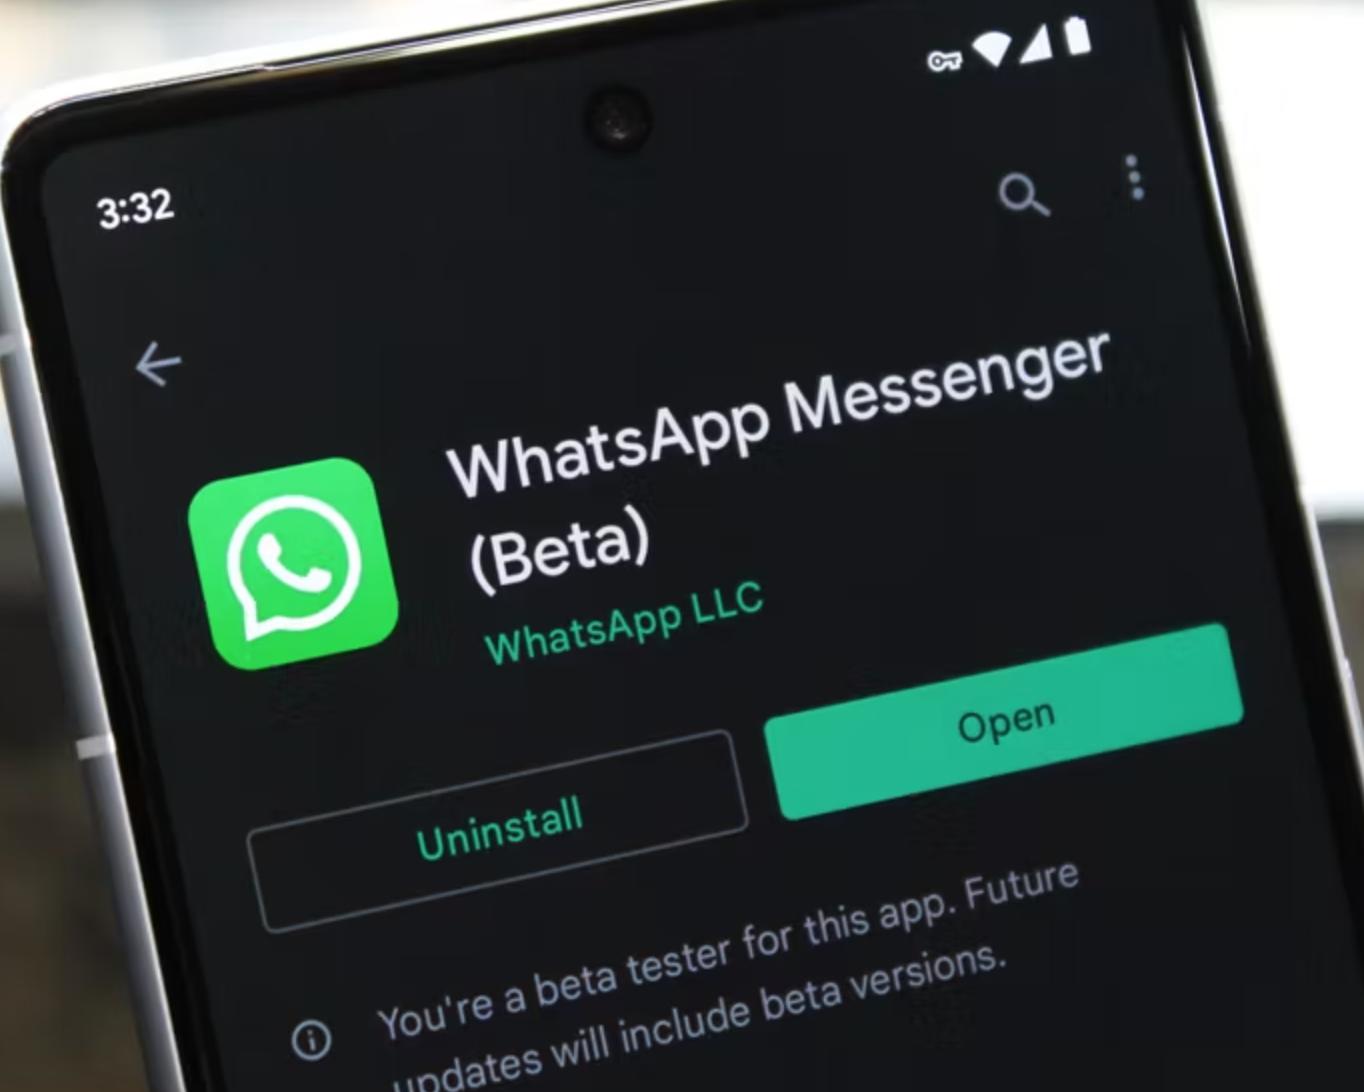 whatsapp中文手机版-WhatsApp中文手机版，界面全中文功能贴心实用，让沟通更顺畅